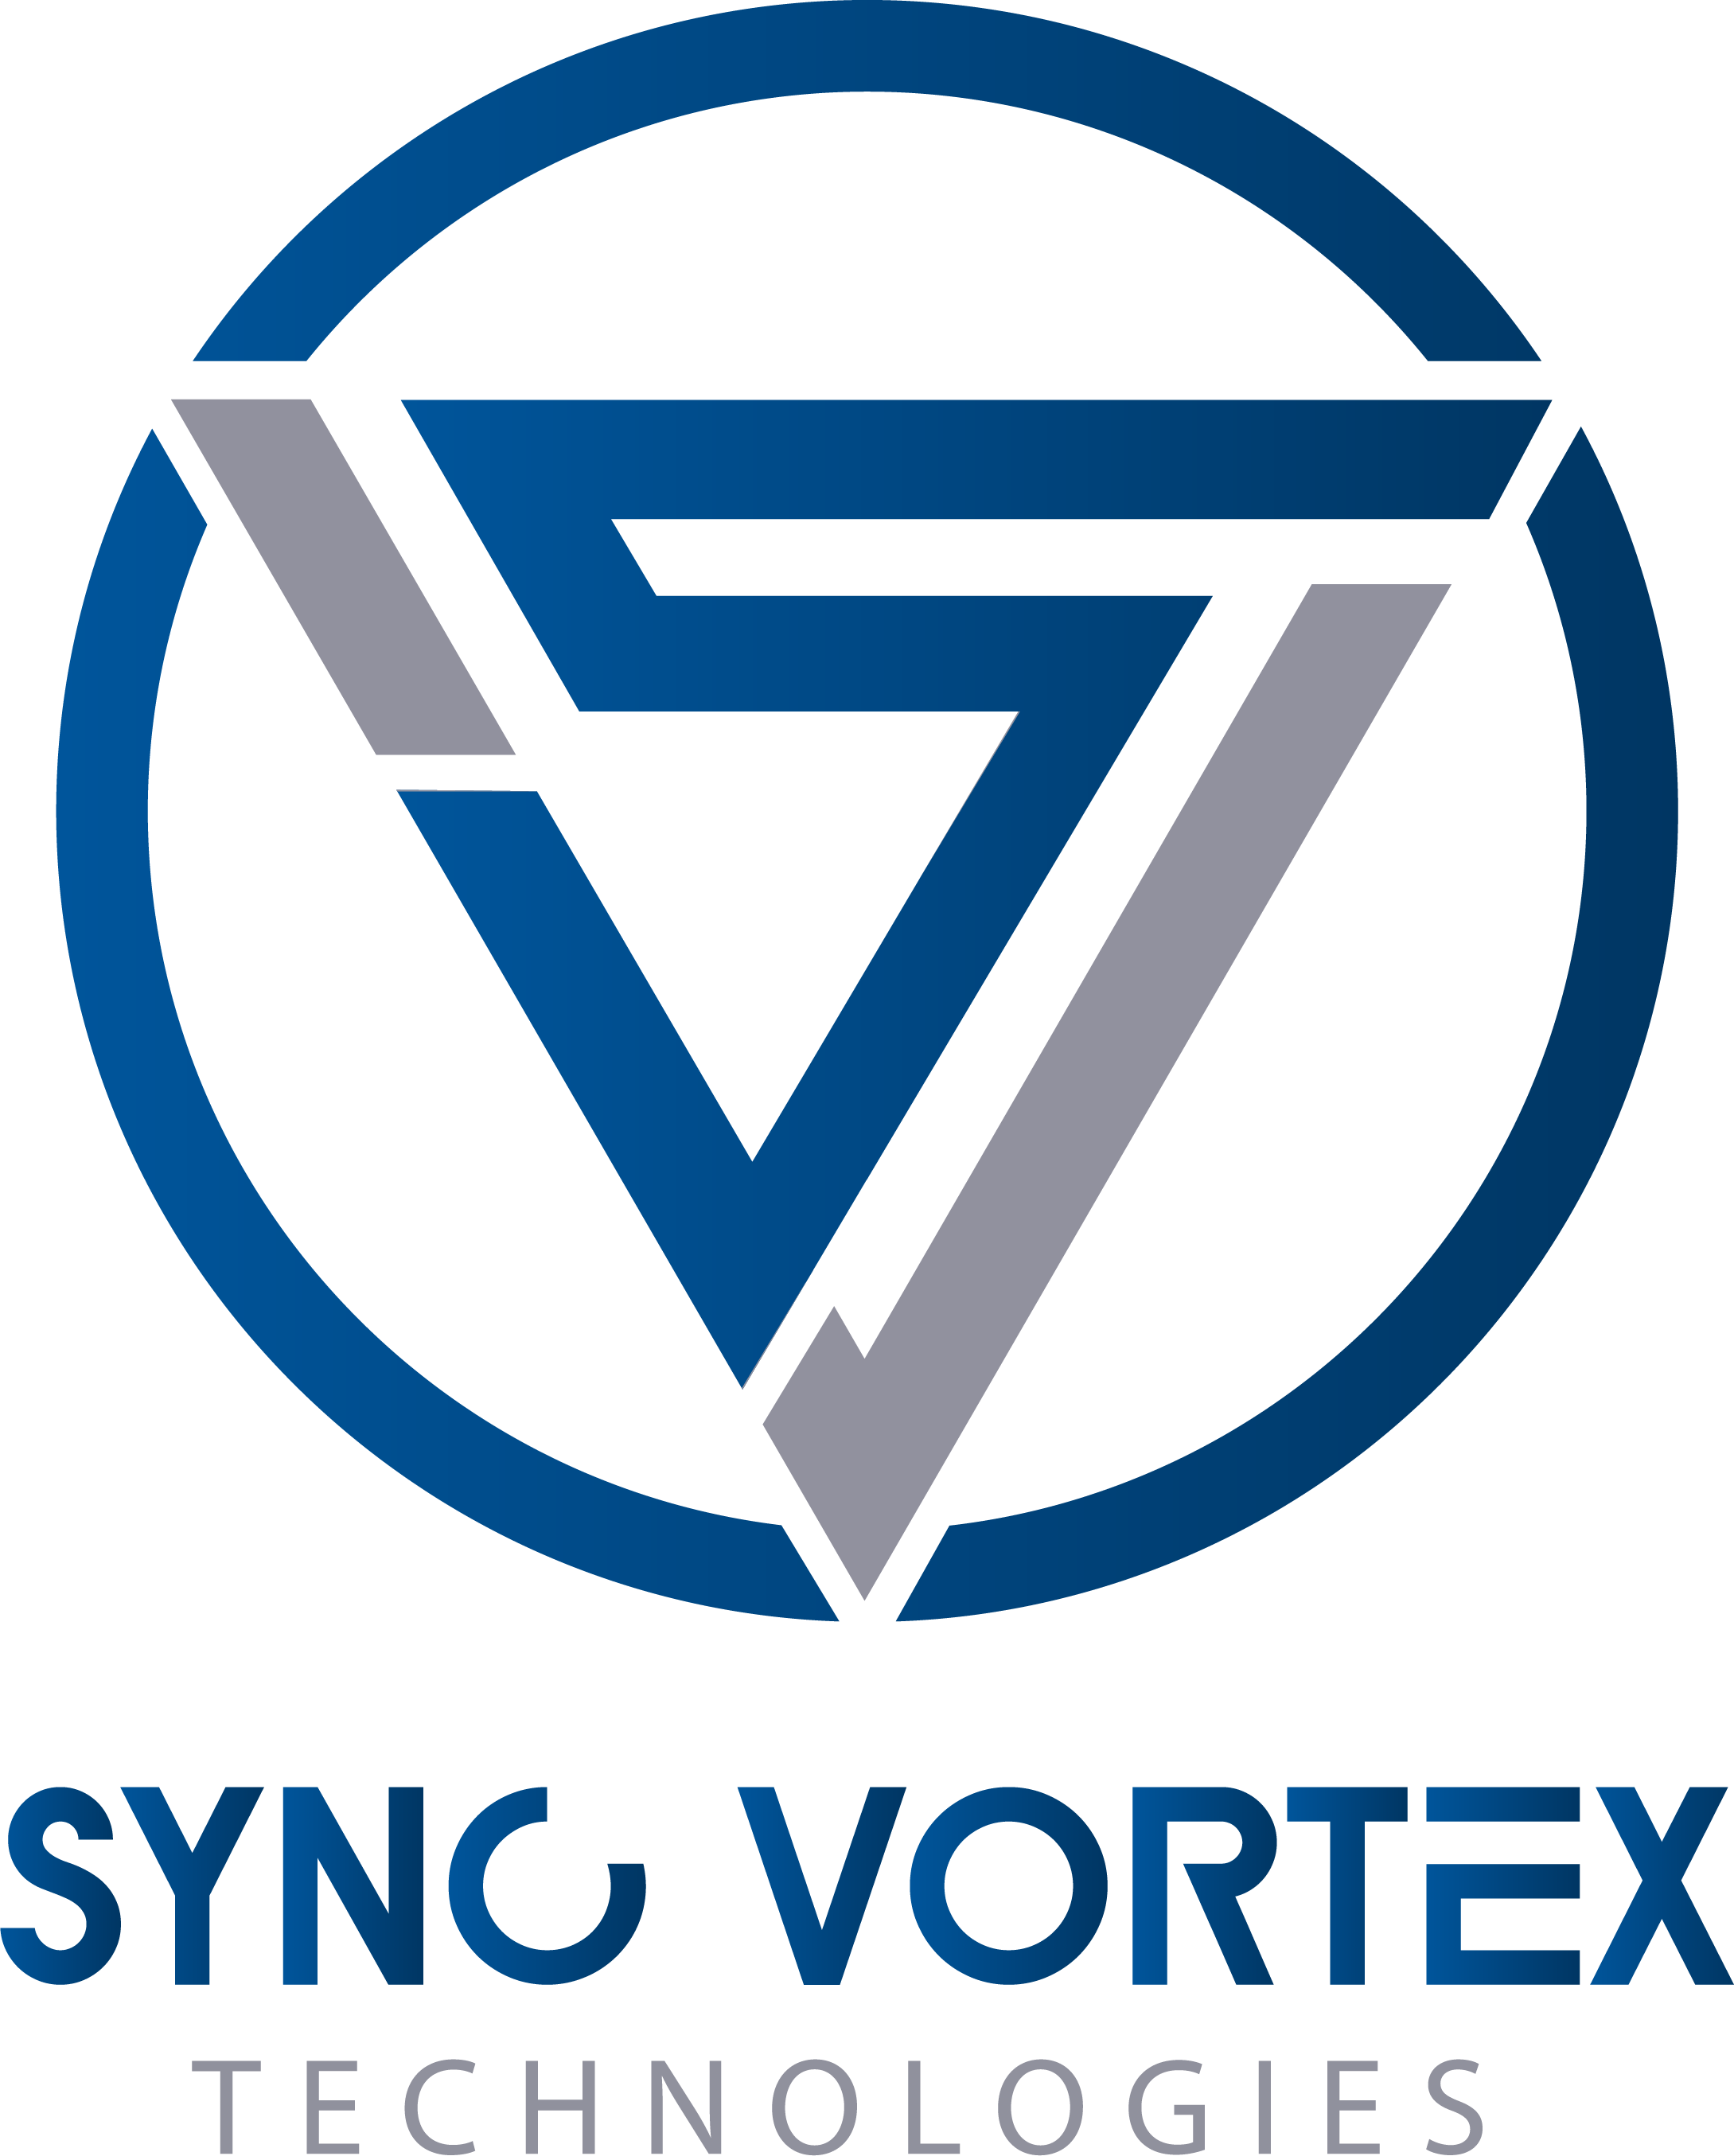 Sync Vortex